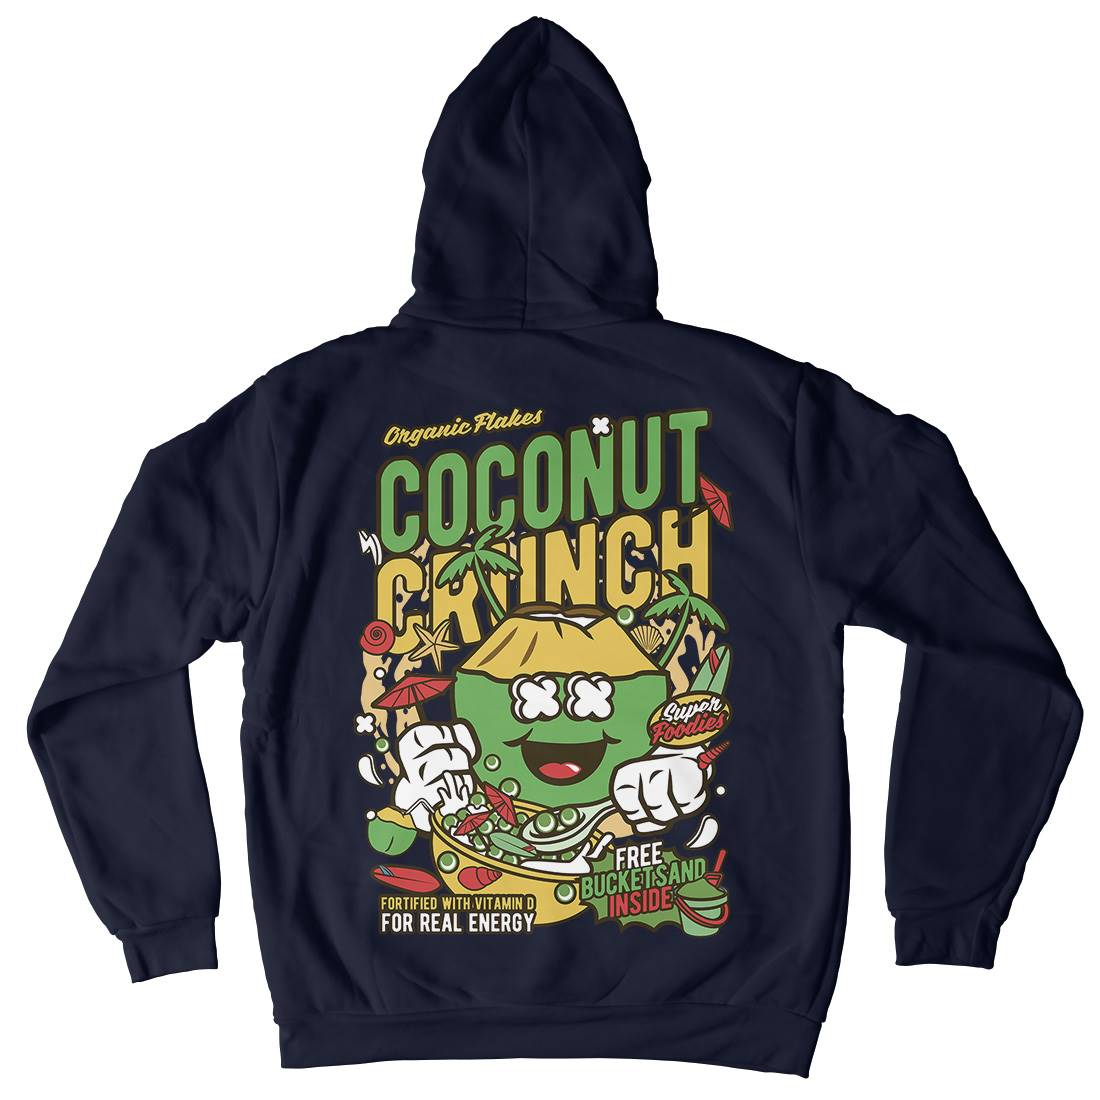 Coconut Crunch Kids Crew Neck Hoodie Food C519